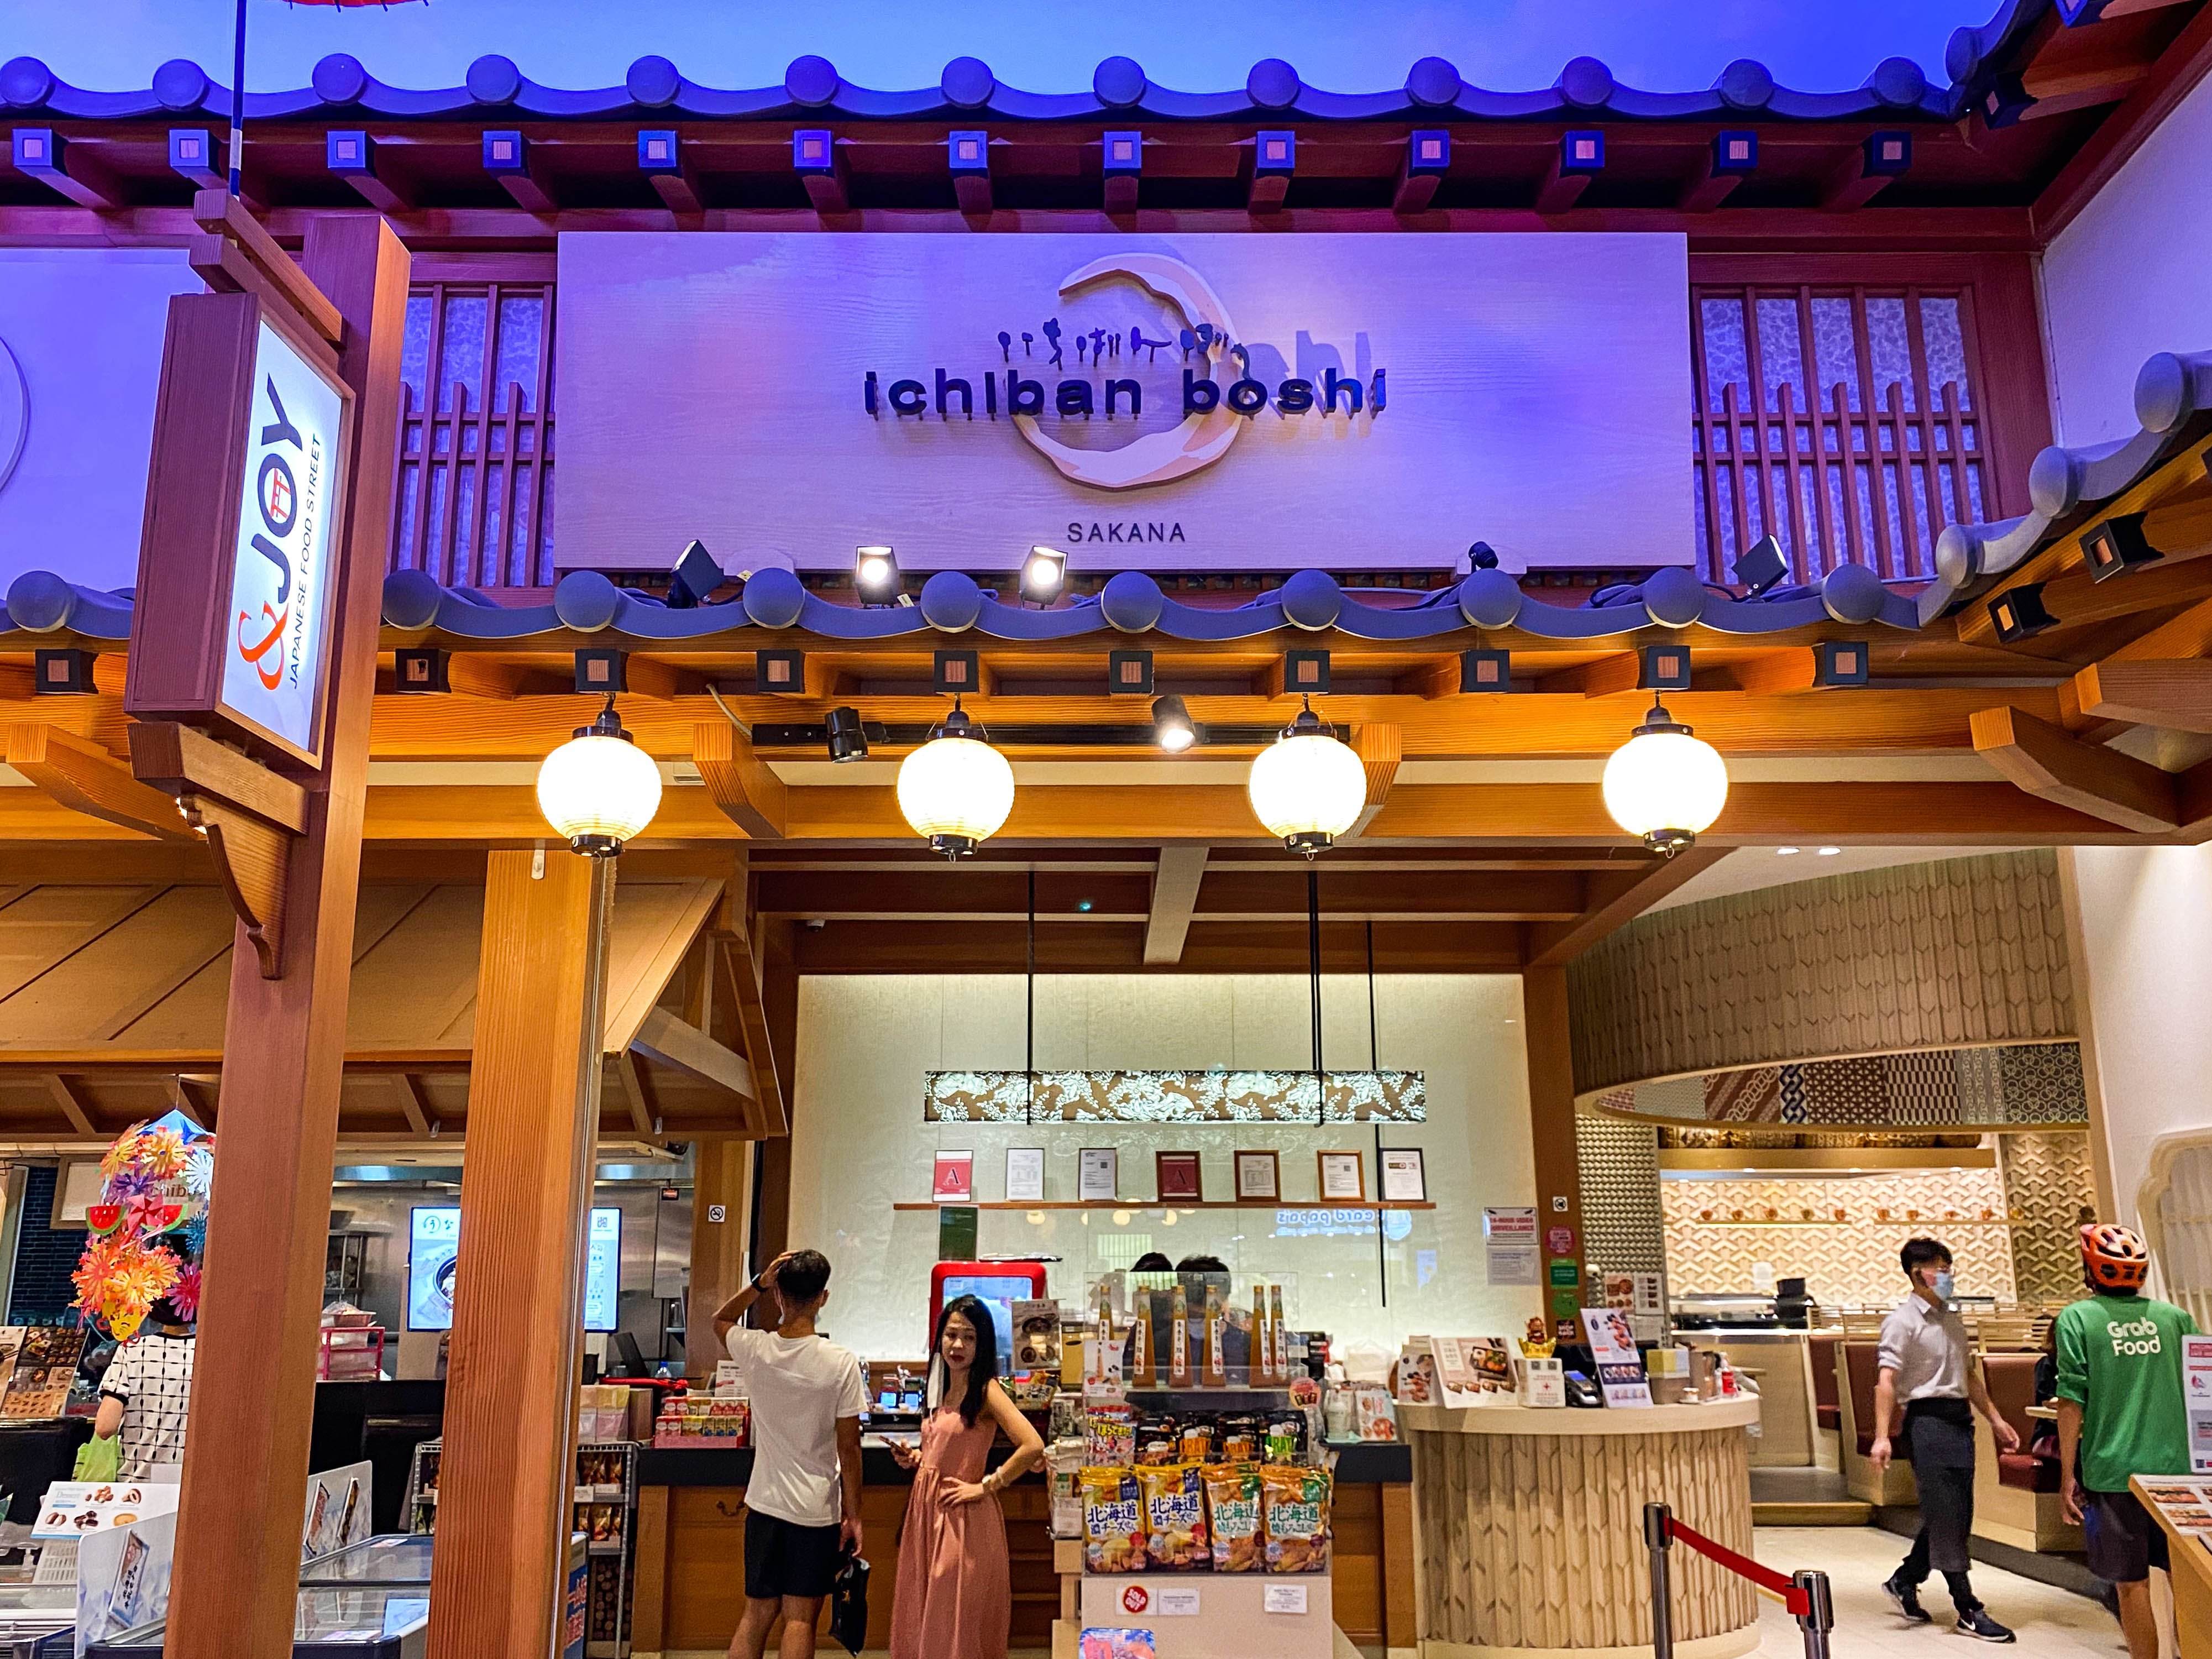 Ichiban Boshi - storefront